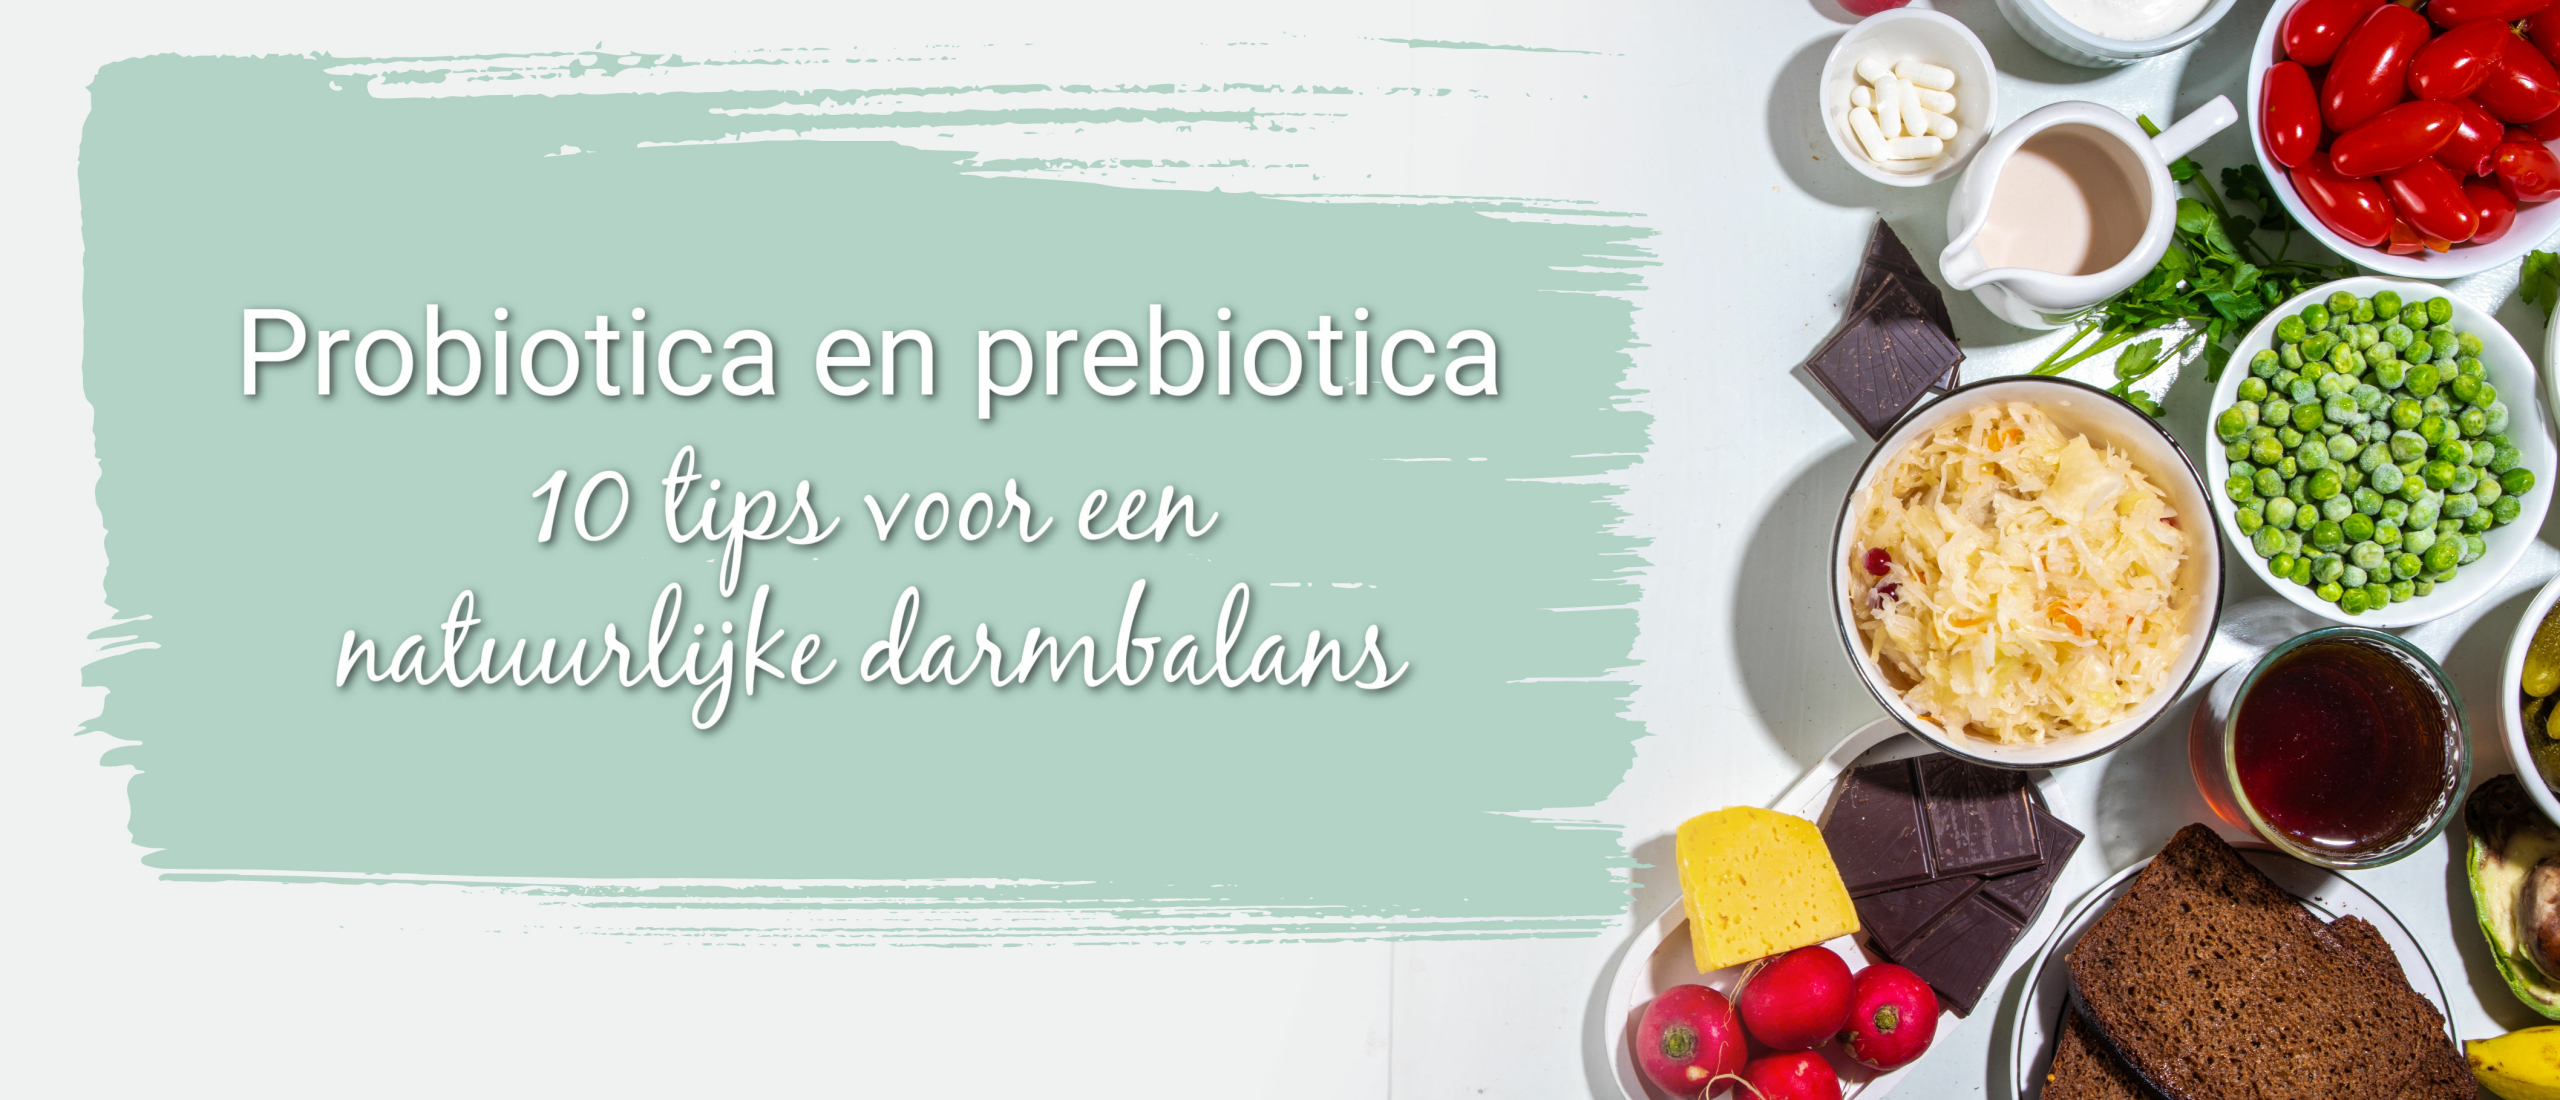 Probiotica en prebiotica, 10 tips voor een natuurlijke darmbalans